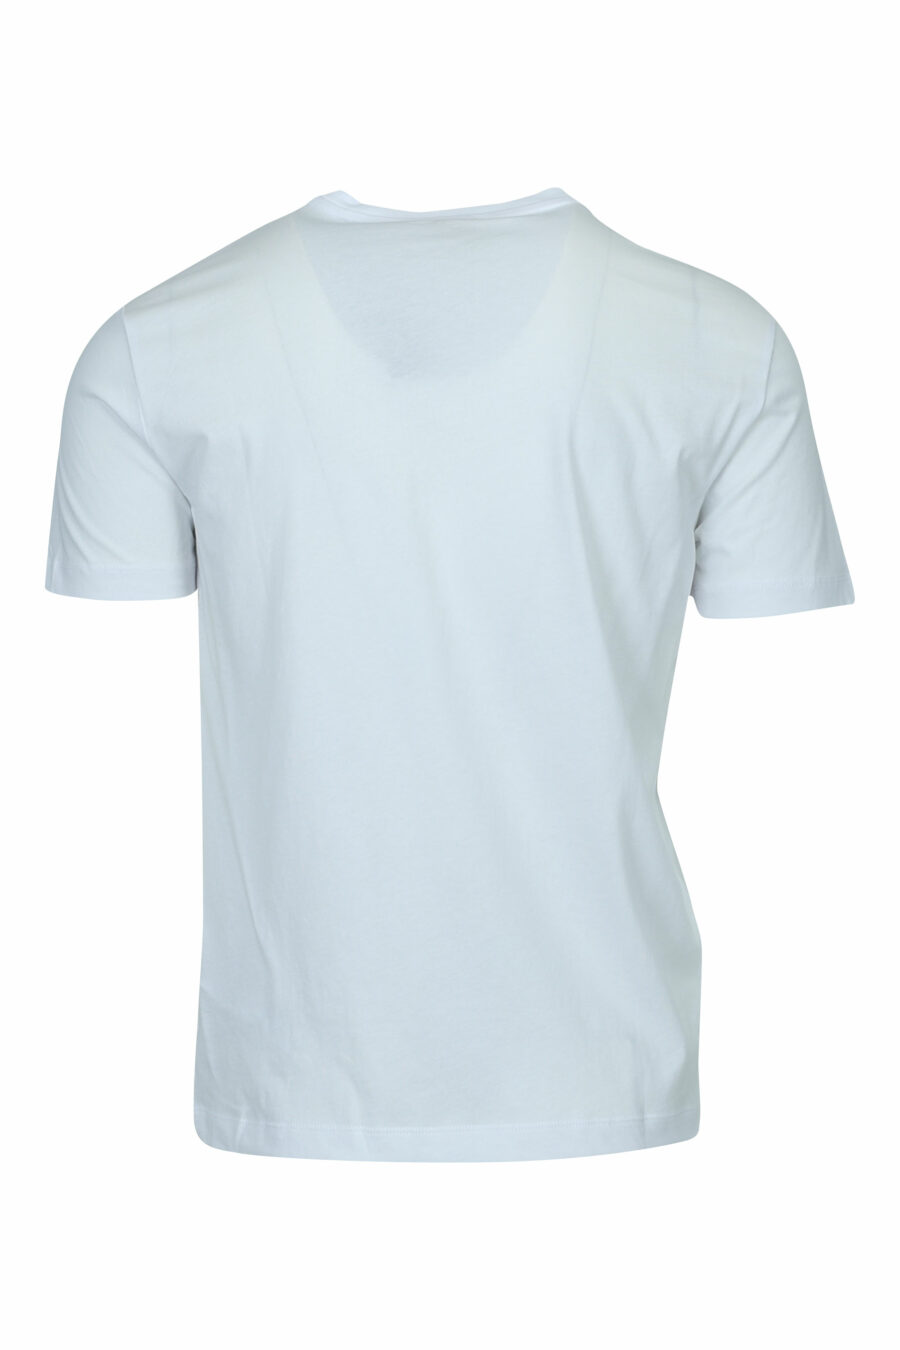 Camiseta blanca con minilogo "lux identity" en placa dorada - 8058947471904 1